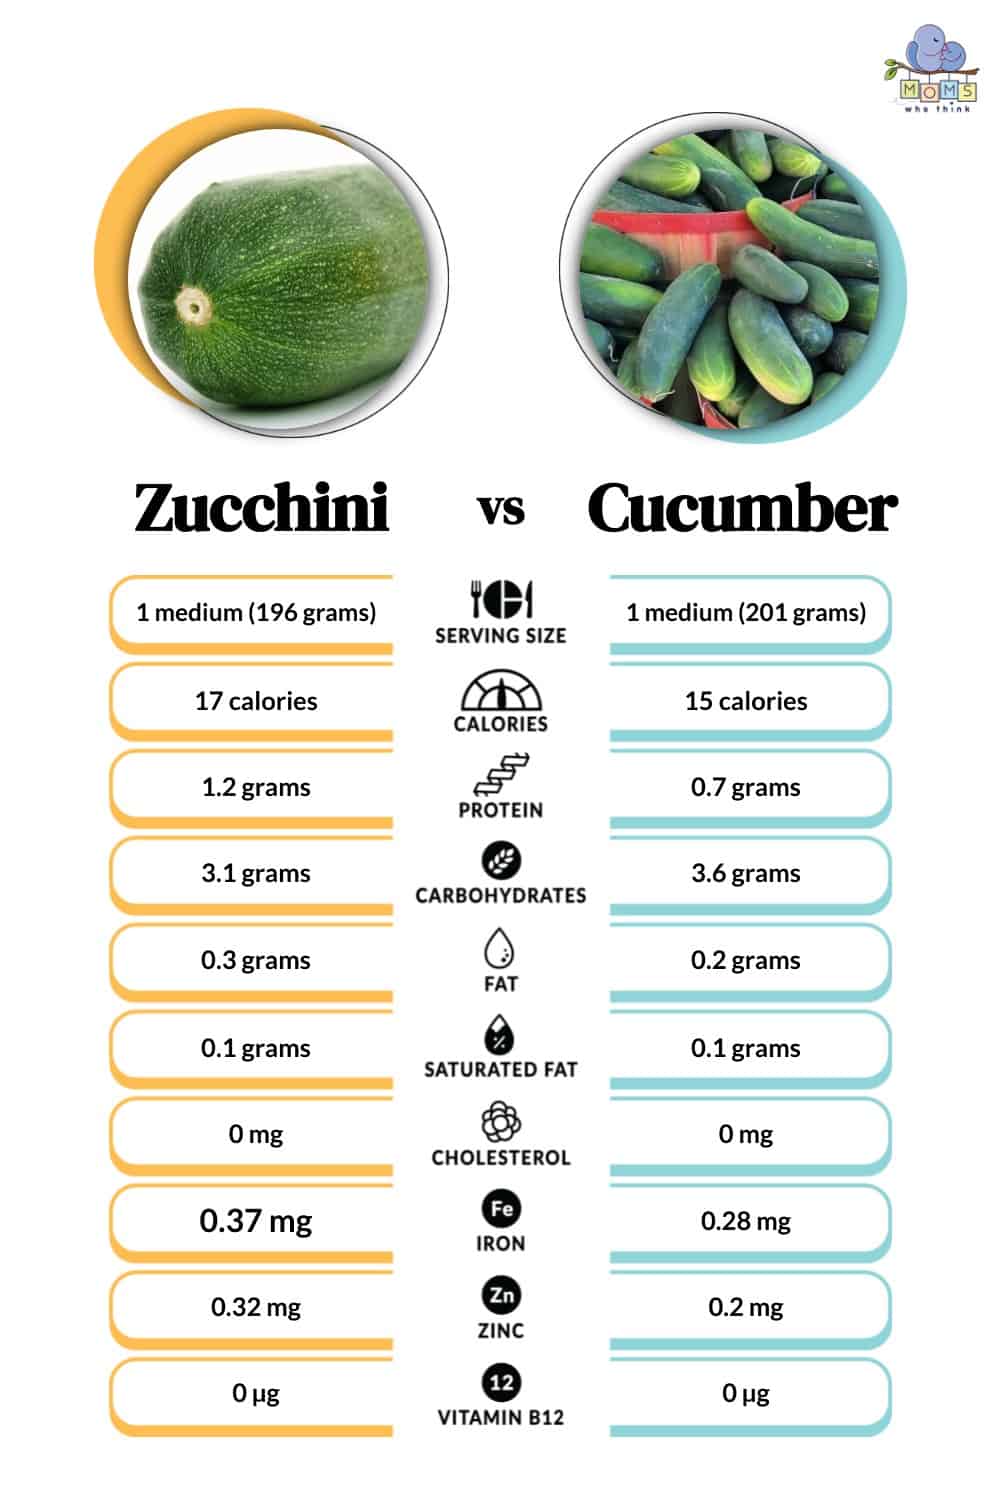 Zucchini vs Cucumber Nutritional Facts